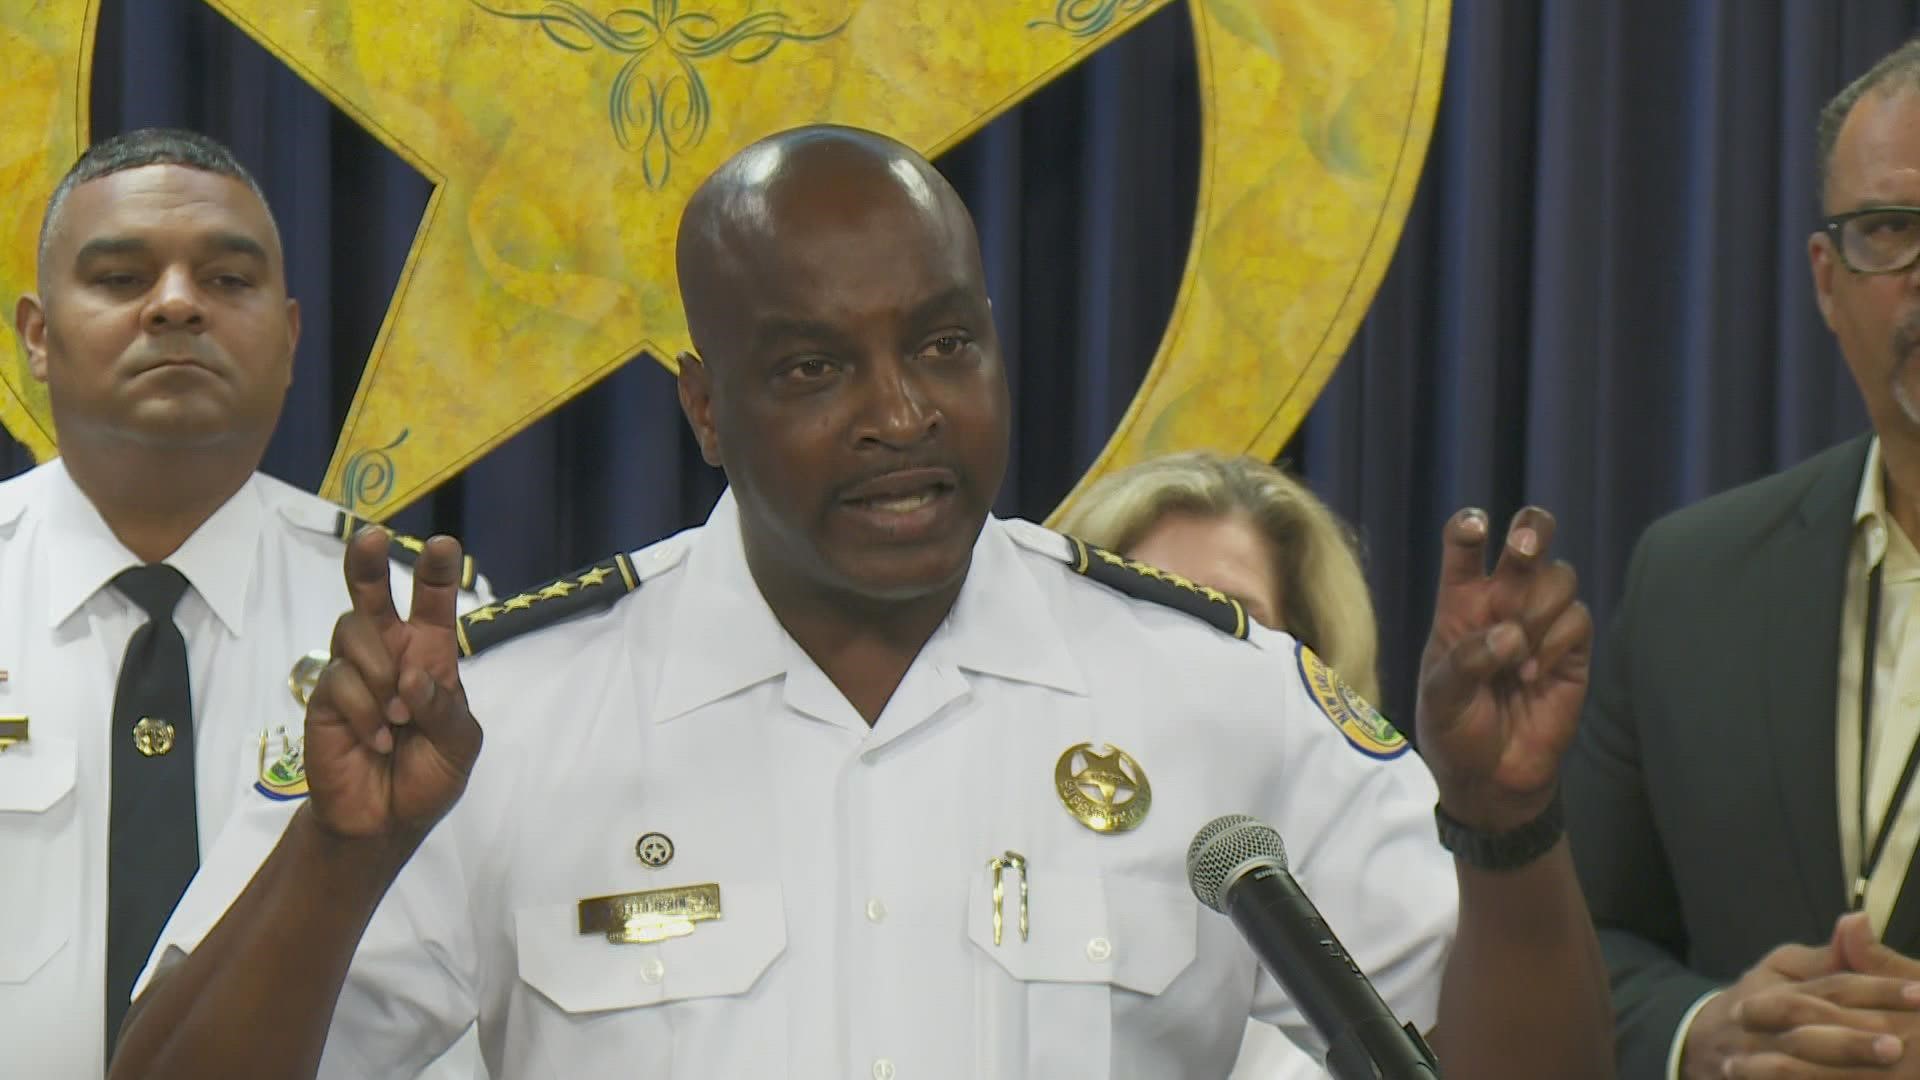 NOPD Superintendent Shaun Ferguson says brazen activities will be met with brazen enforcement.